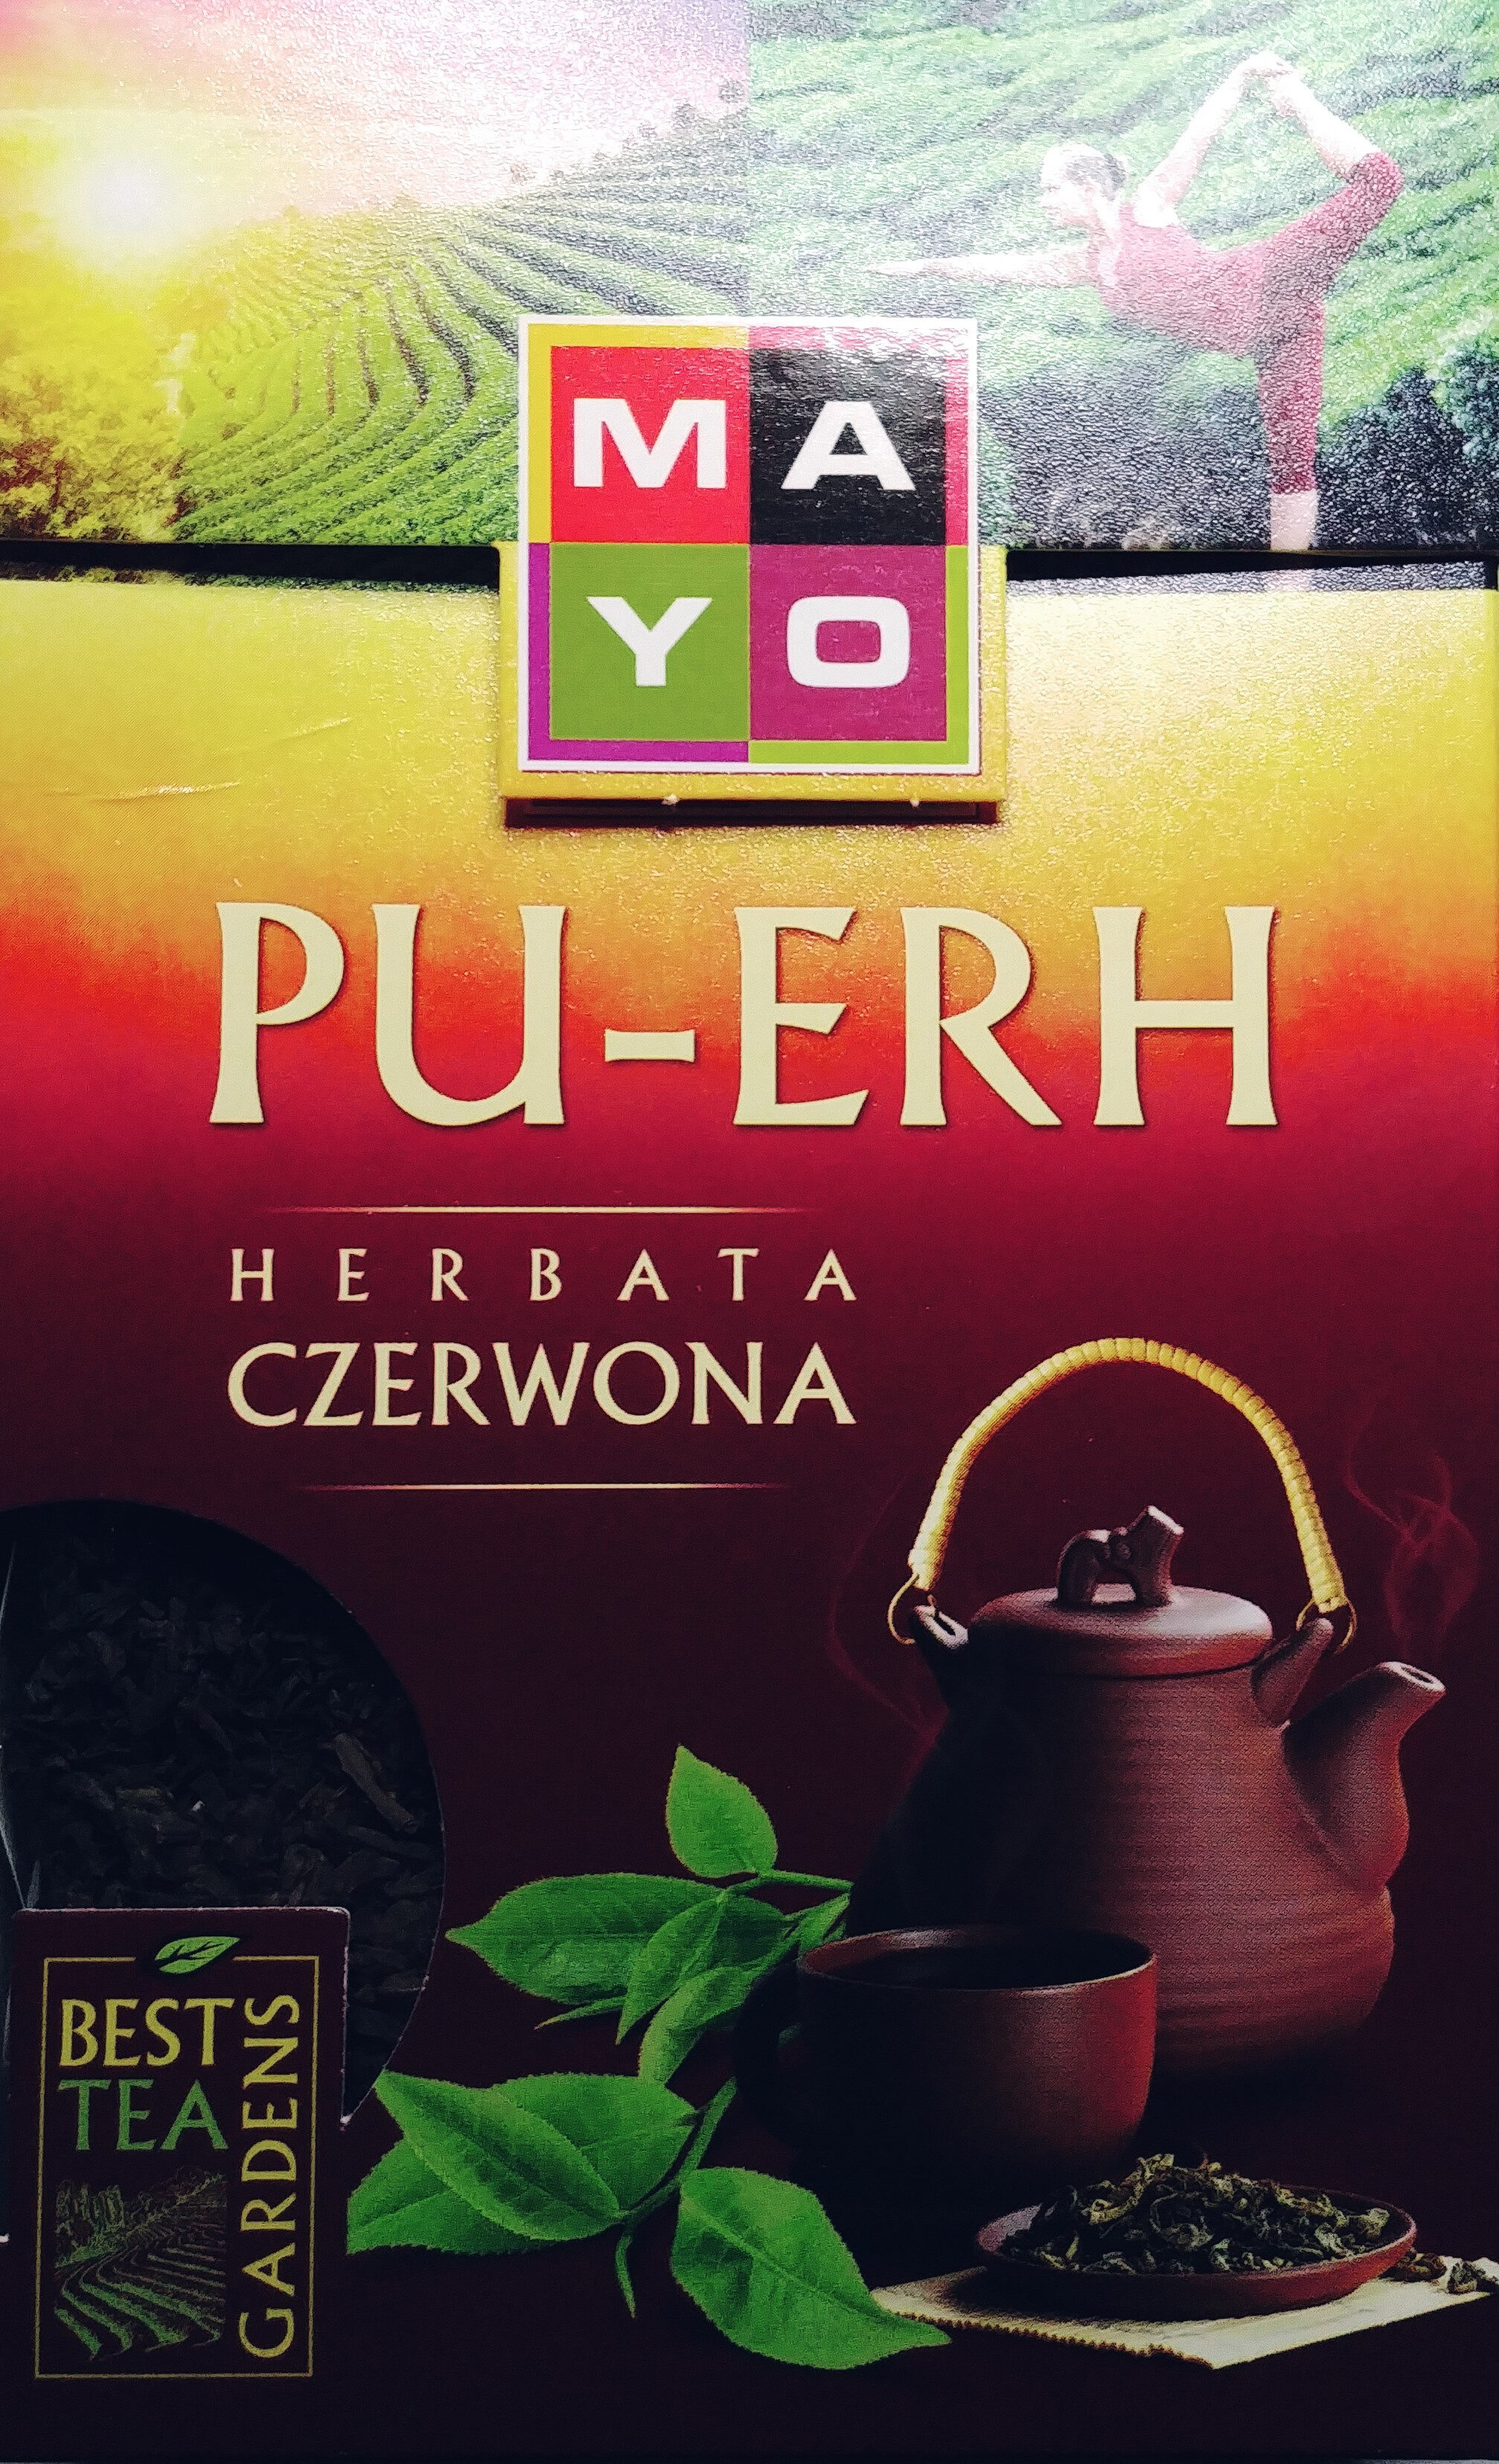 Czerwona herbata - Product - pl